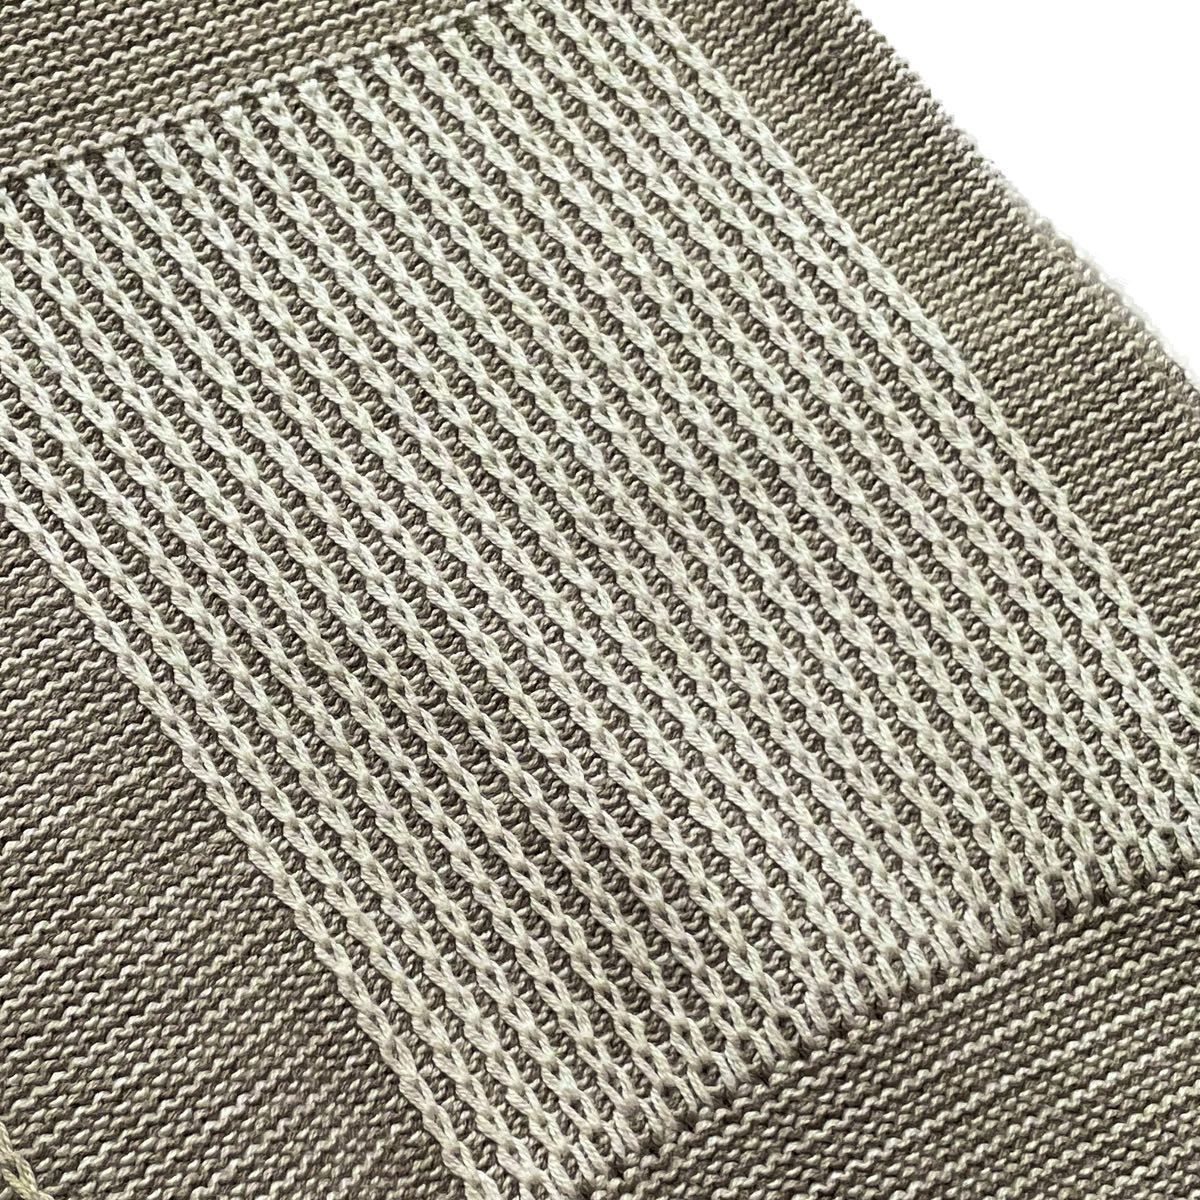 90s USA製 LANDS' END Vintage Cotton Knit ランズエンド コットンニット デザイン スウェット ニット セーター ヴィンテージ ビンテージ_画像4